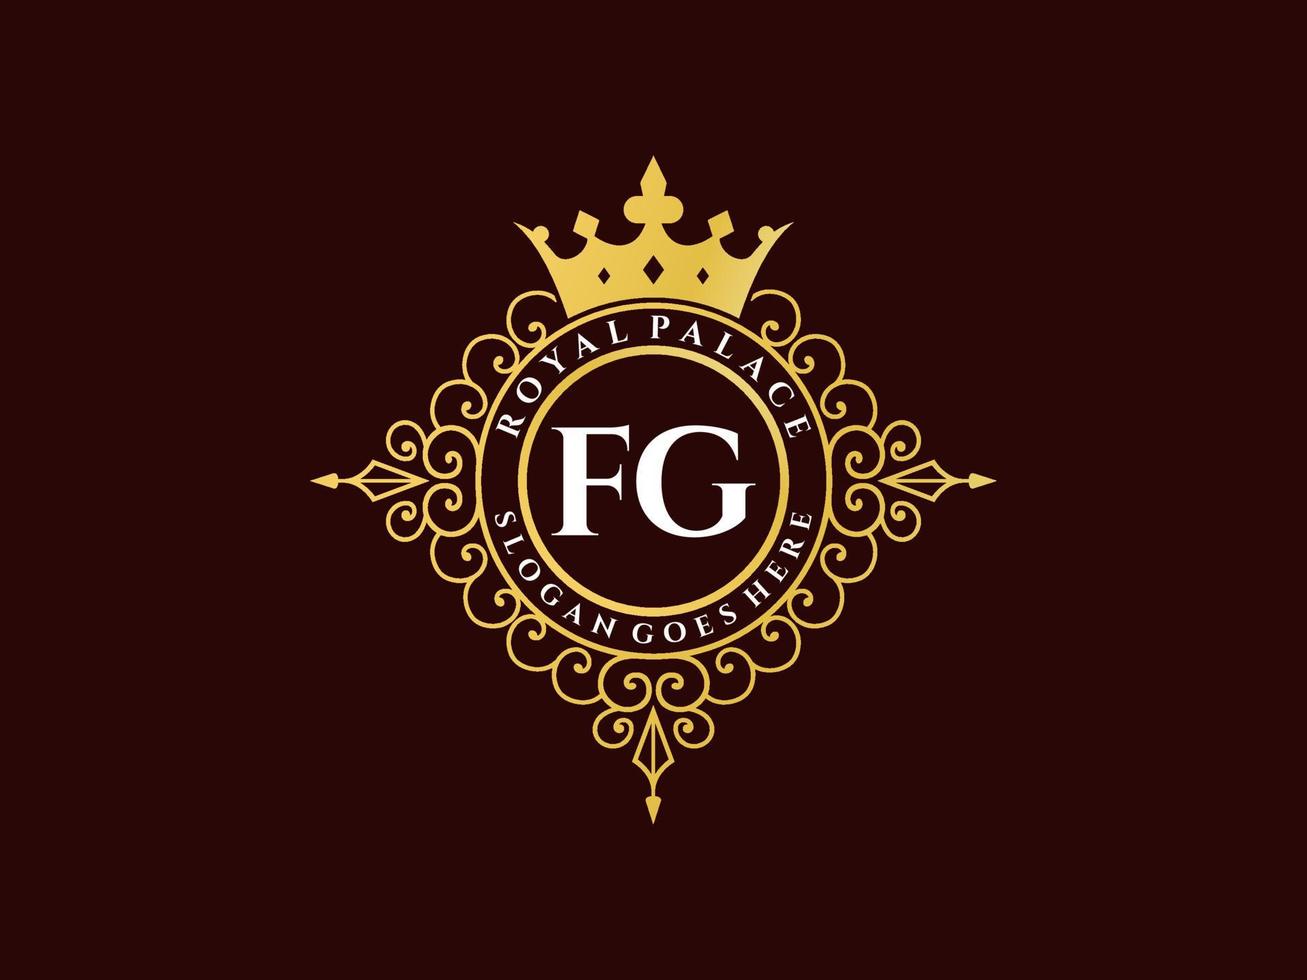 lettre fg logo victorien de luxe royal antique avec cadre ornemental. vecteur